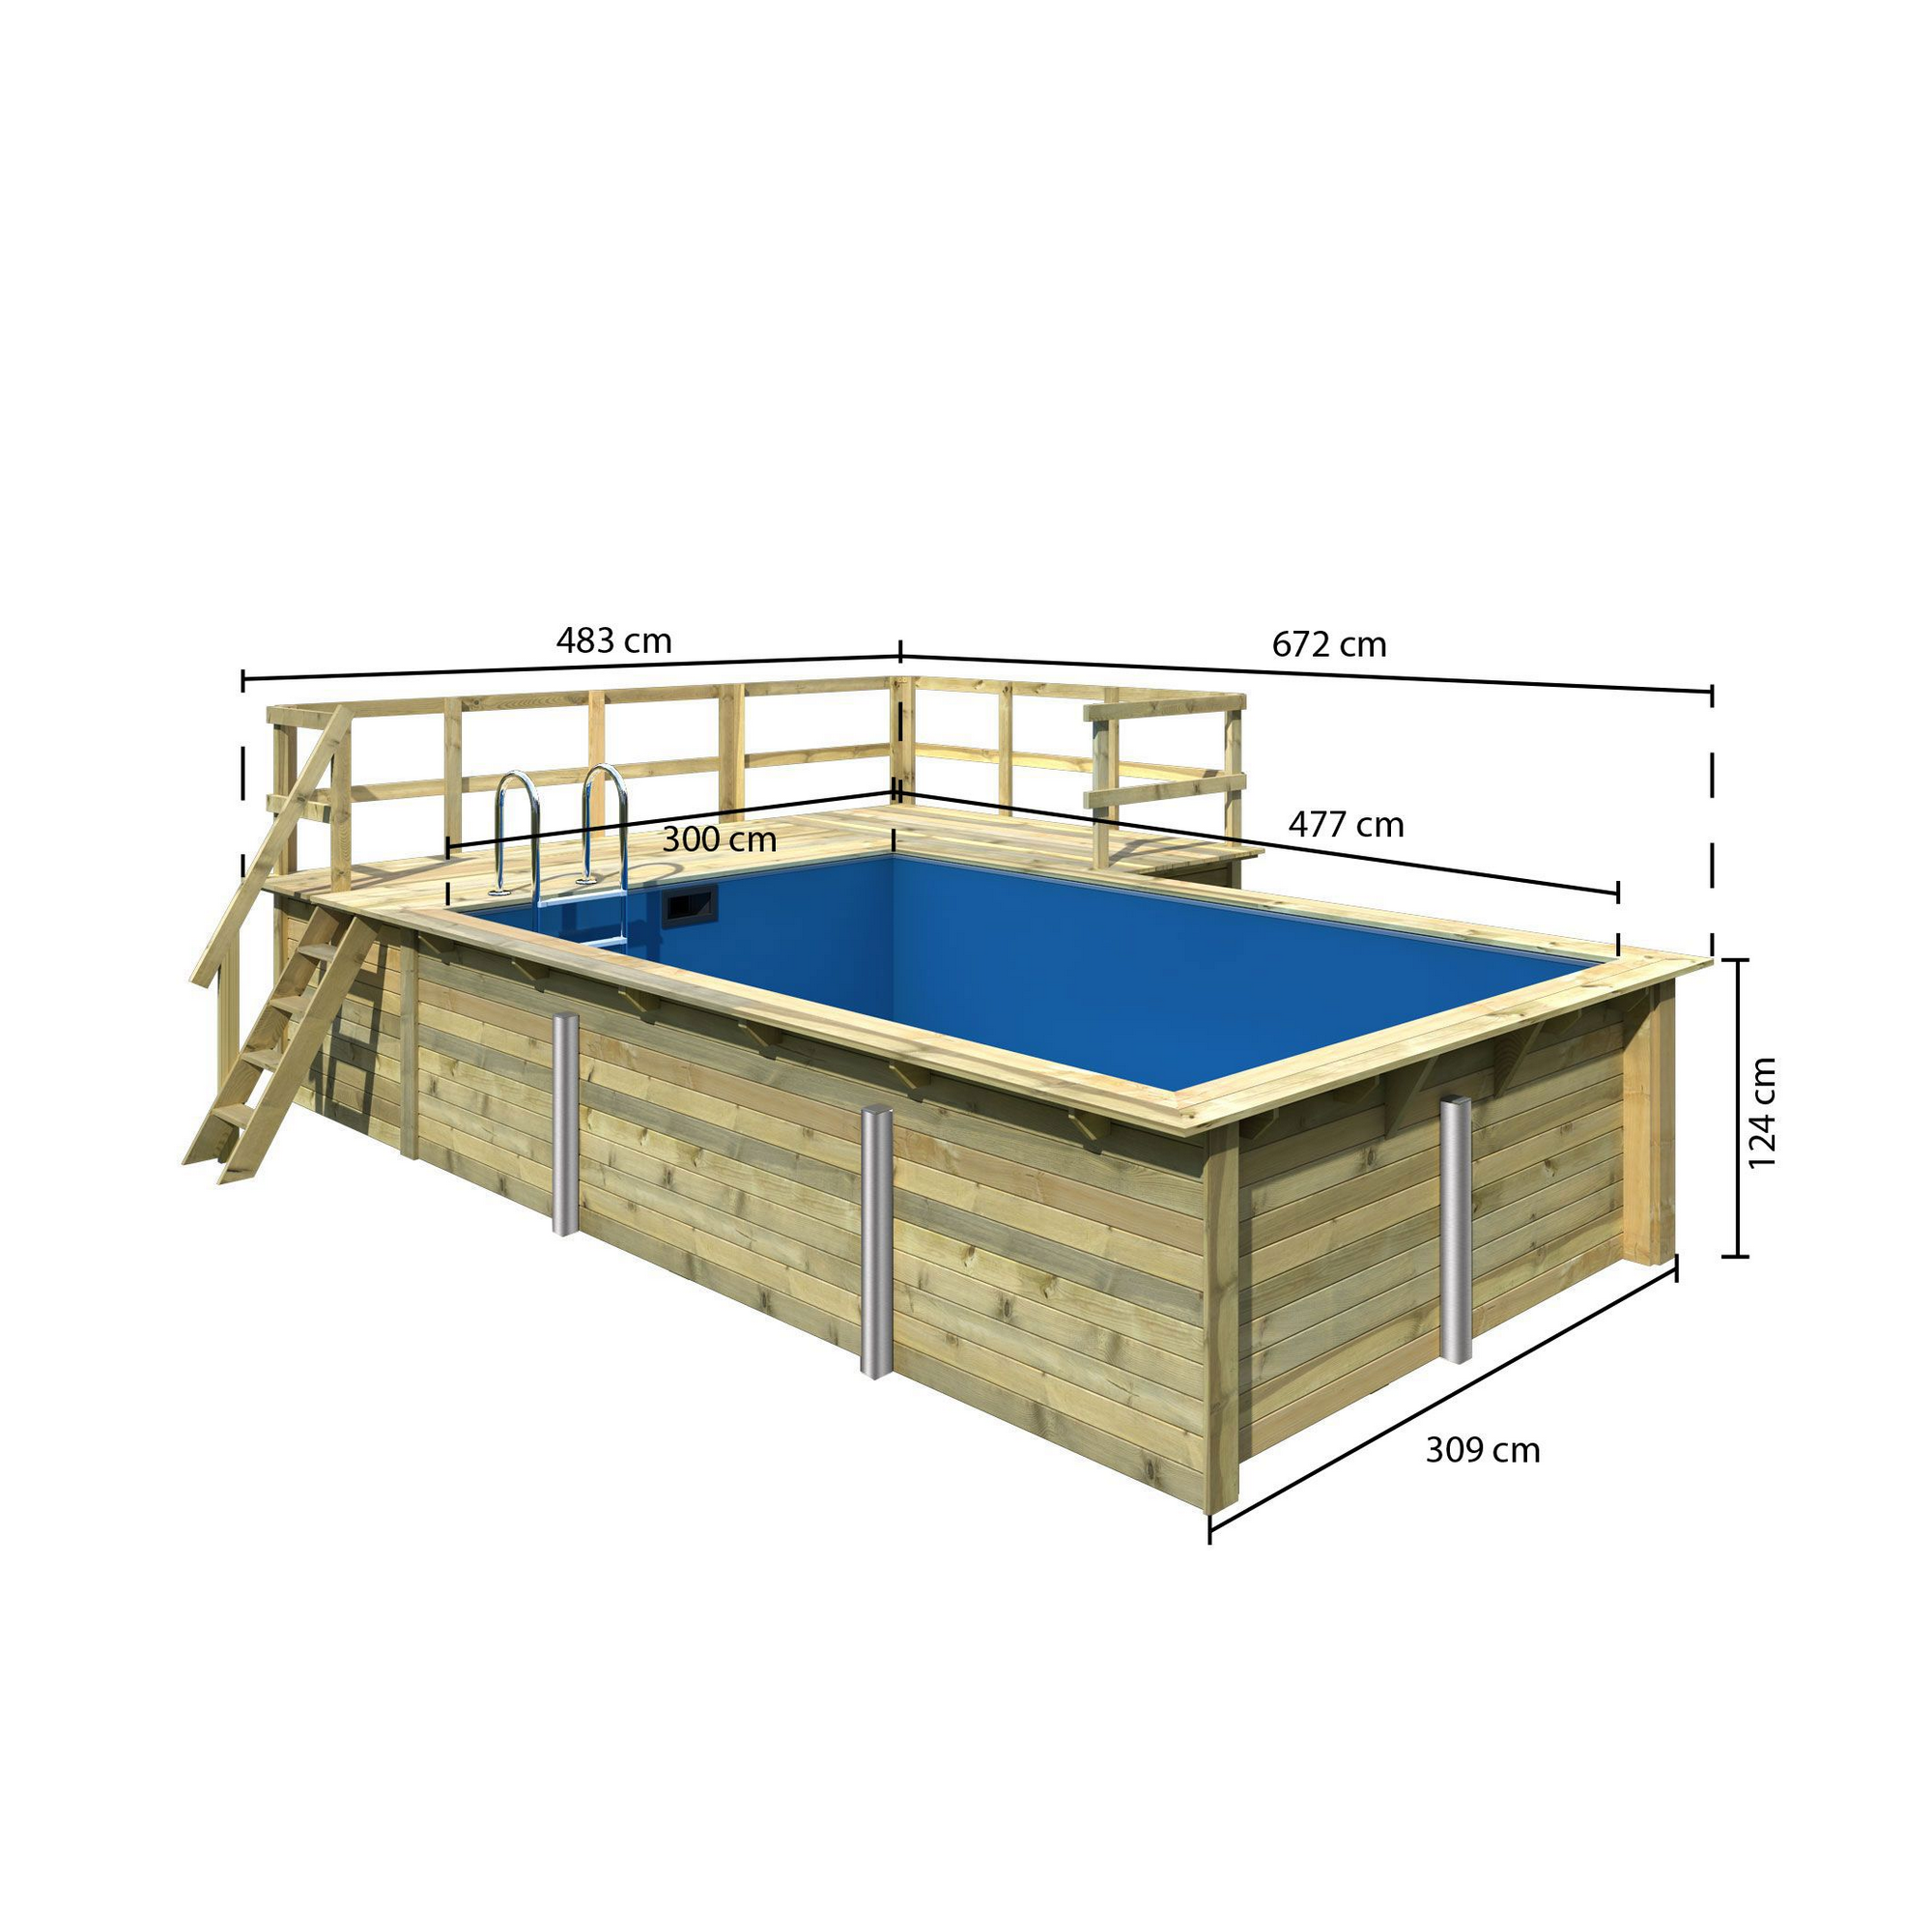 Massivholzpool-Set 'Modell Rechteck pool-Set 3 B' 477 x 300 x 124 cm mit Sonnendeck und Einhängeleiter + product picture